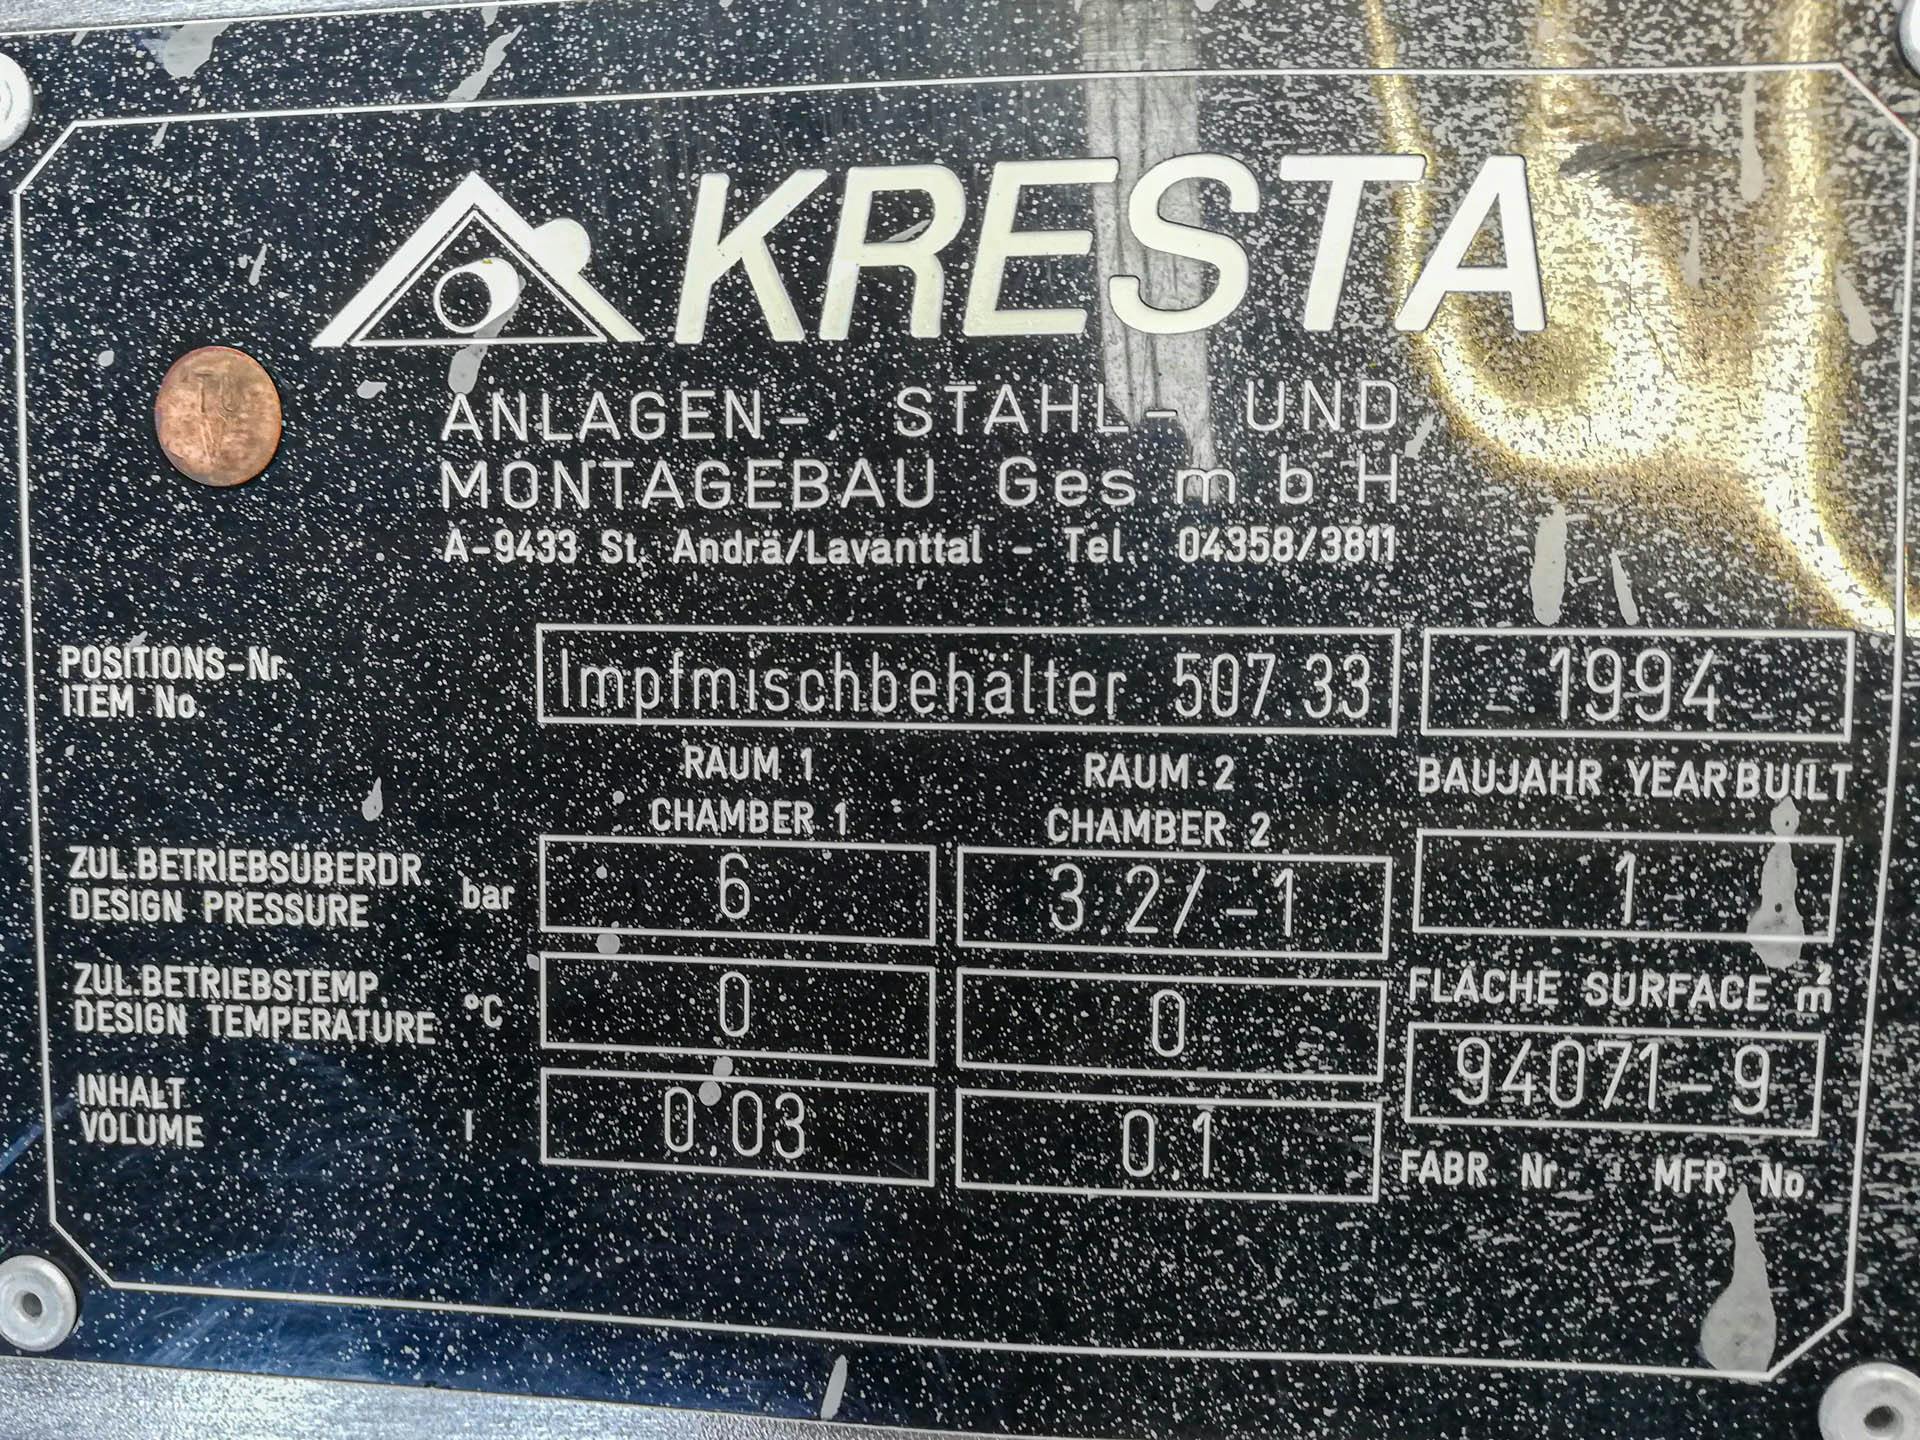 Kresta 150 Ltr - Cuve pressurisable - image 4